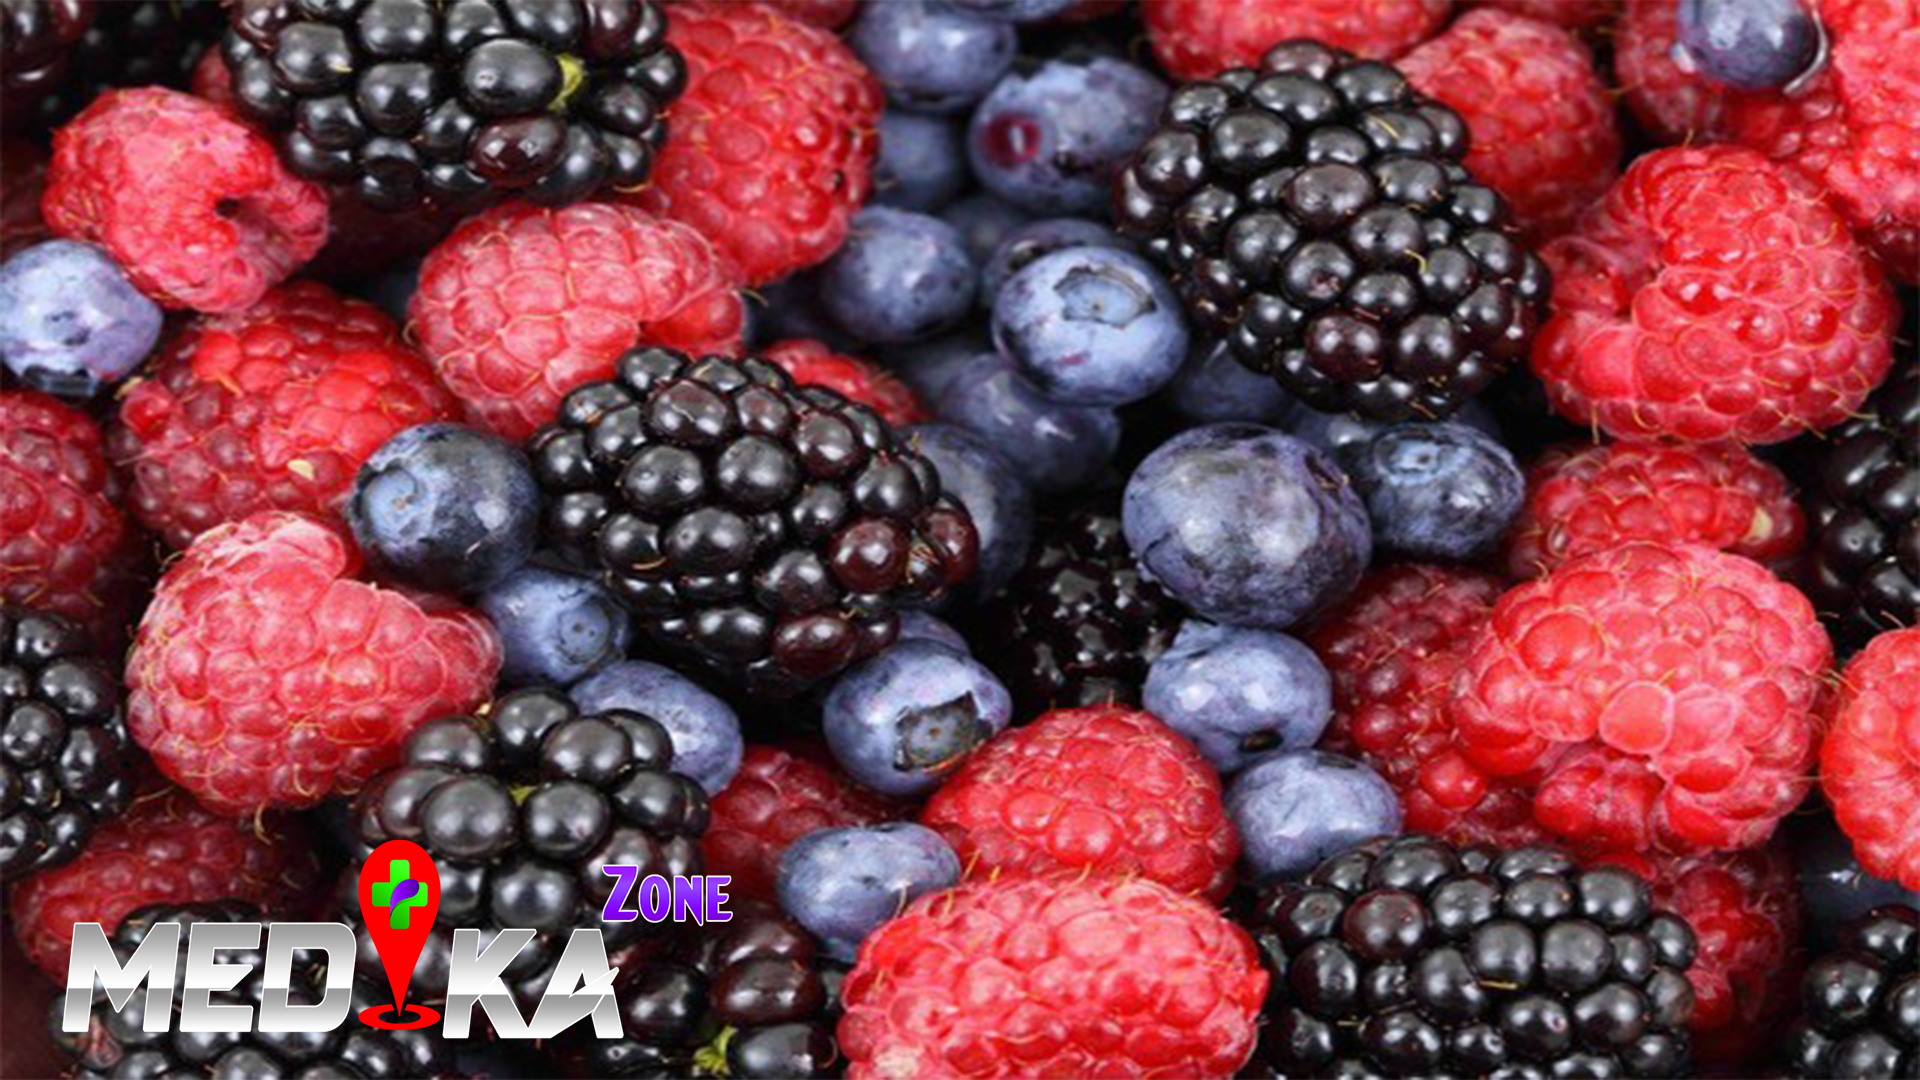 Buah Blackberry, Ragam Nutrisi dan Manfaatnya untuk Tubuh